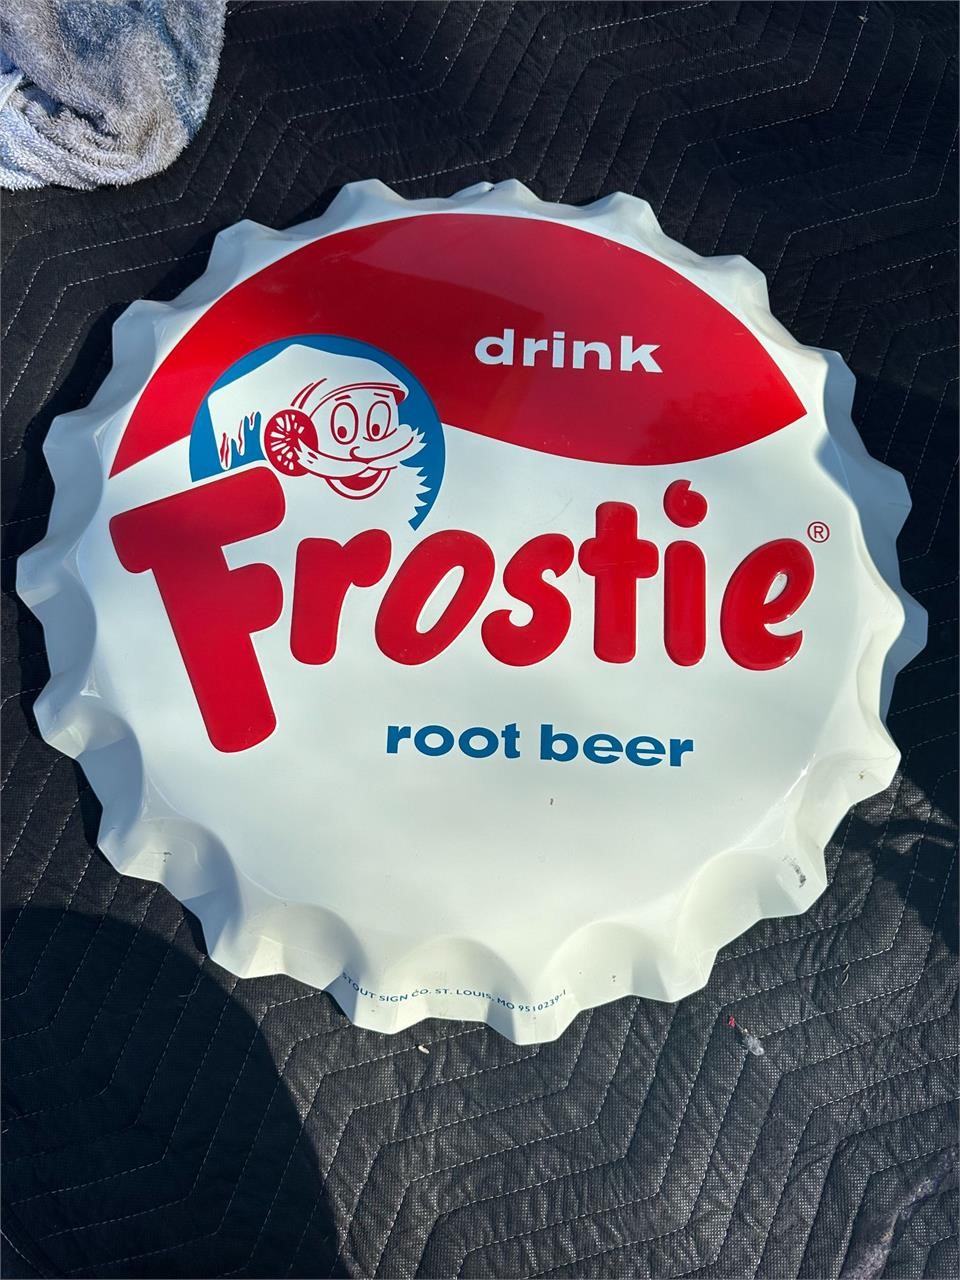 Frostie Cap